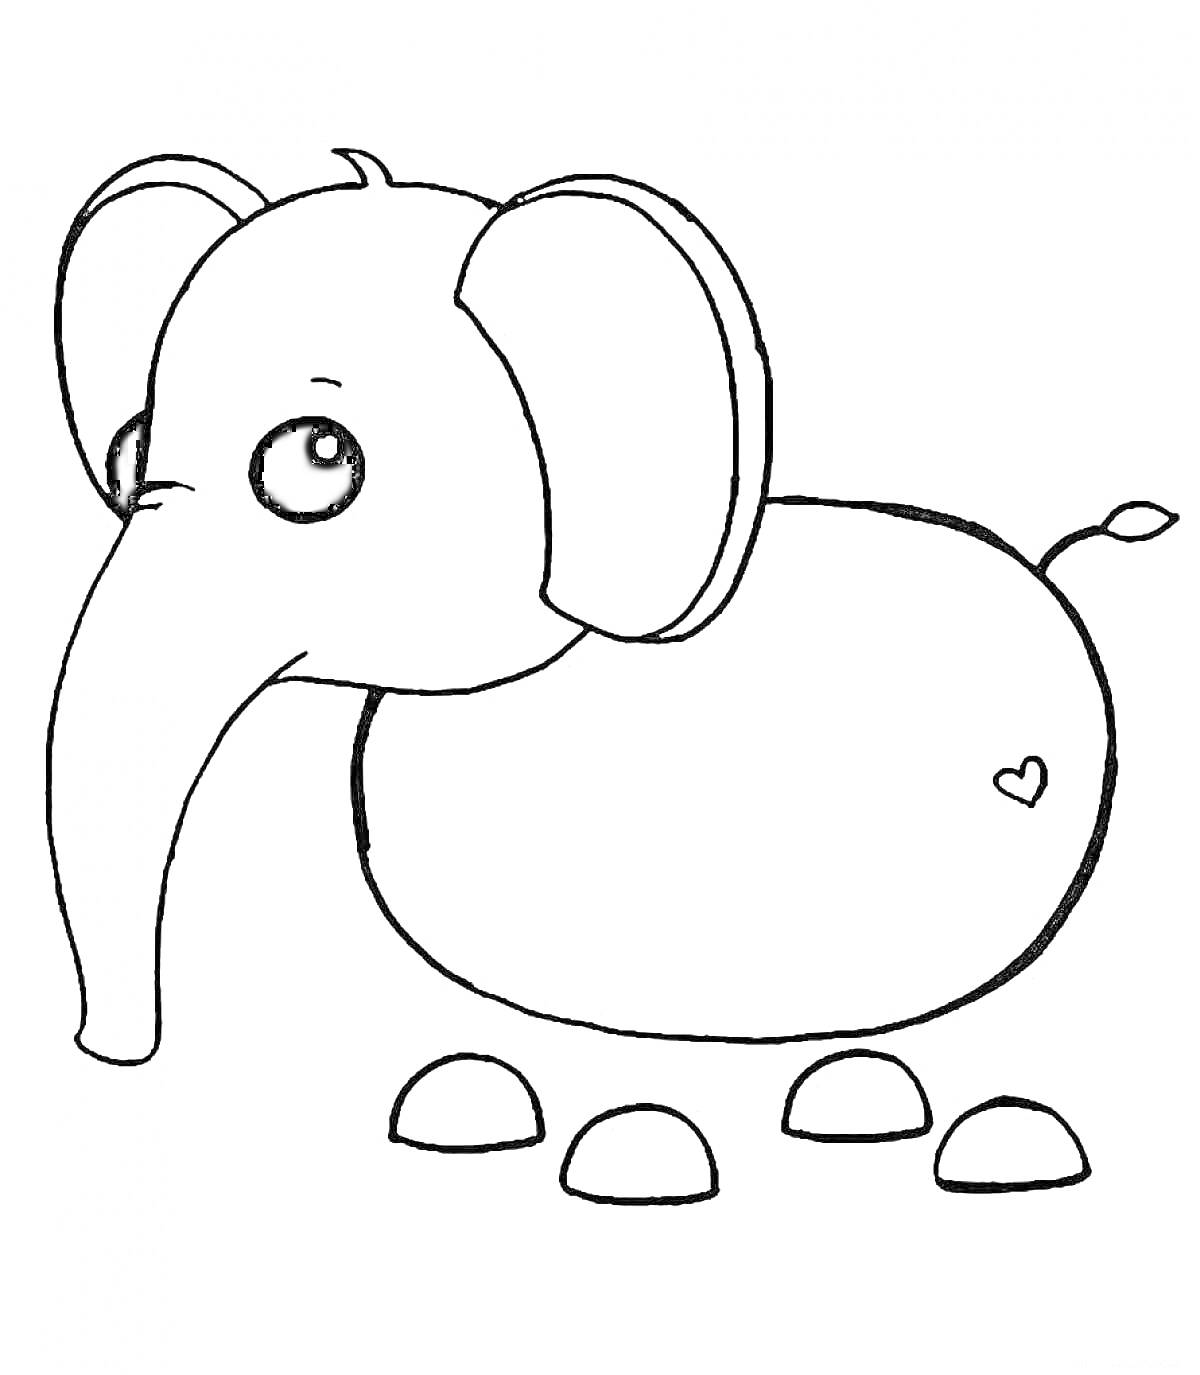 Слон из Адопт Ми с сердечком и четырьмя подушечками лап